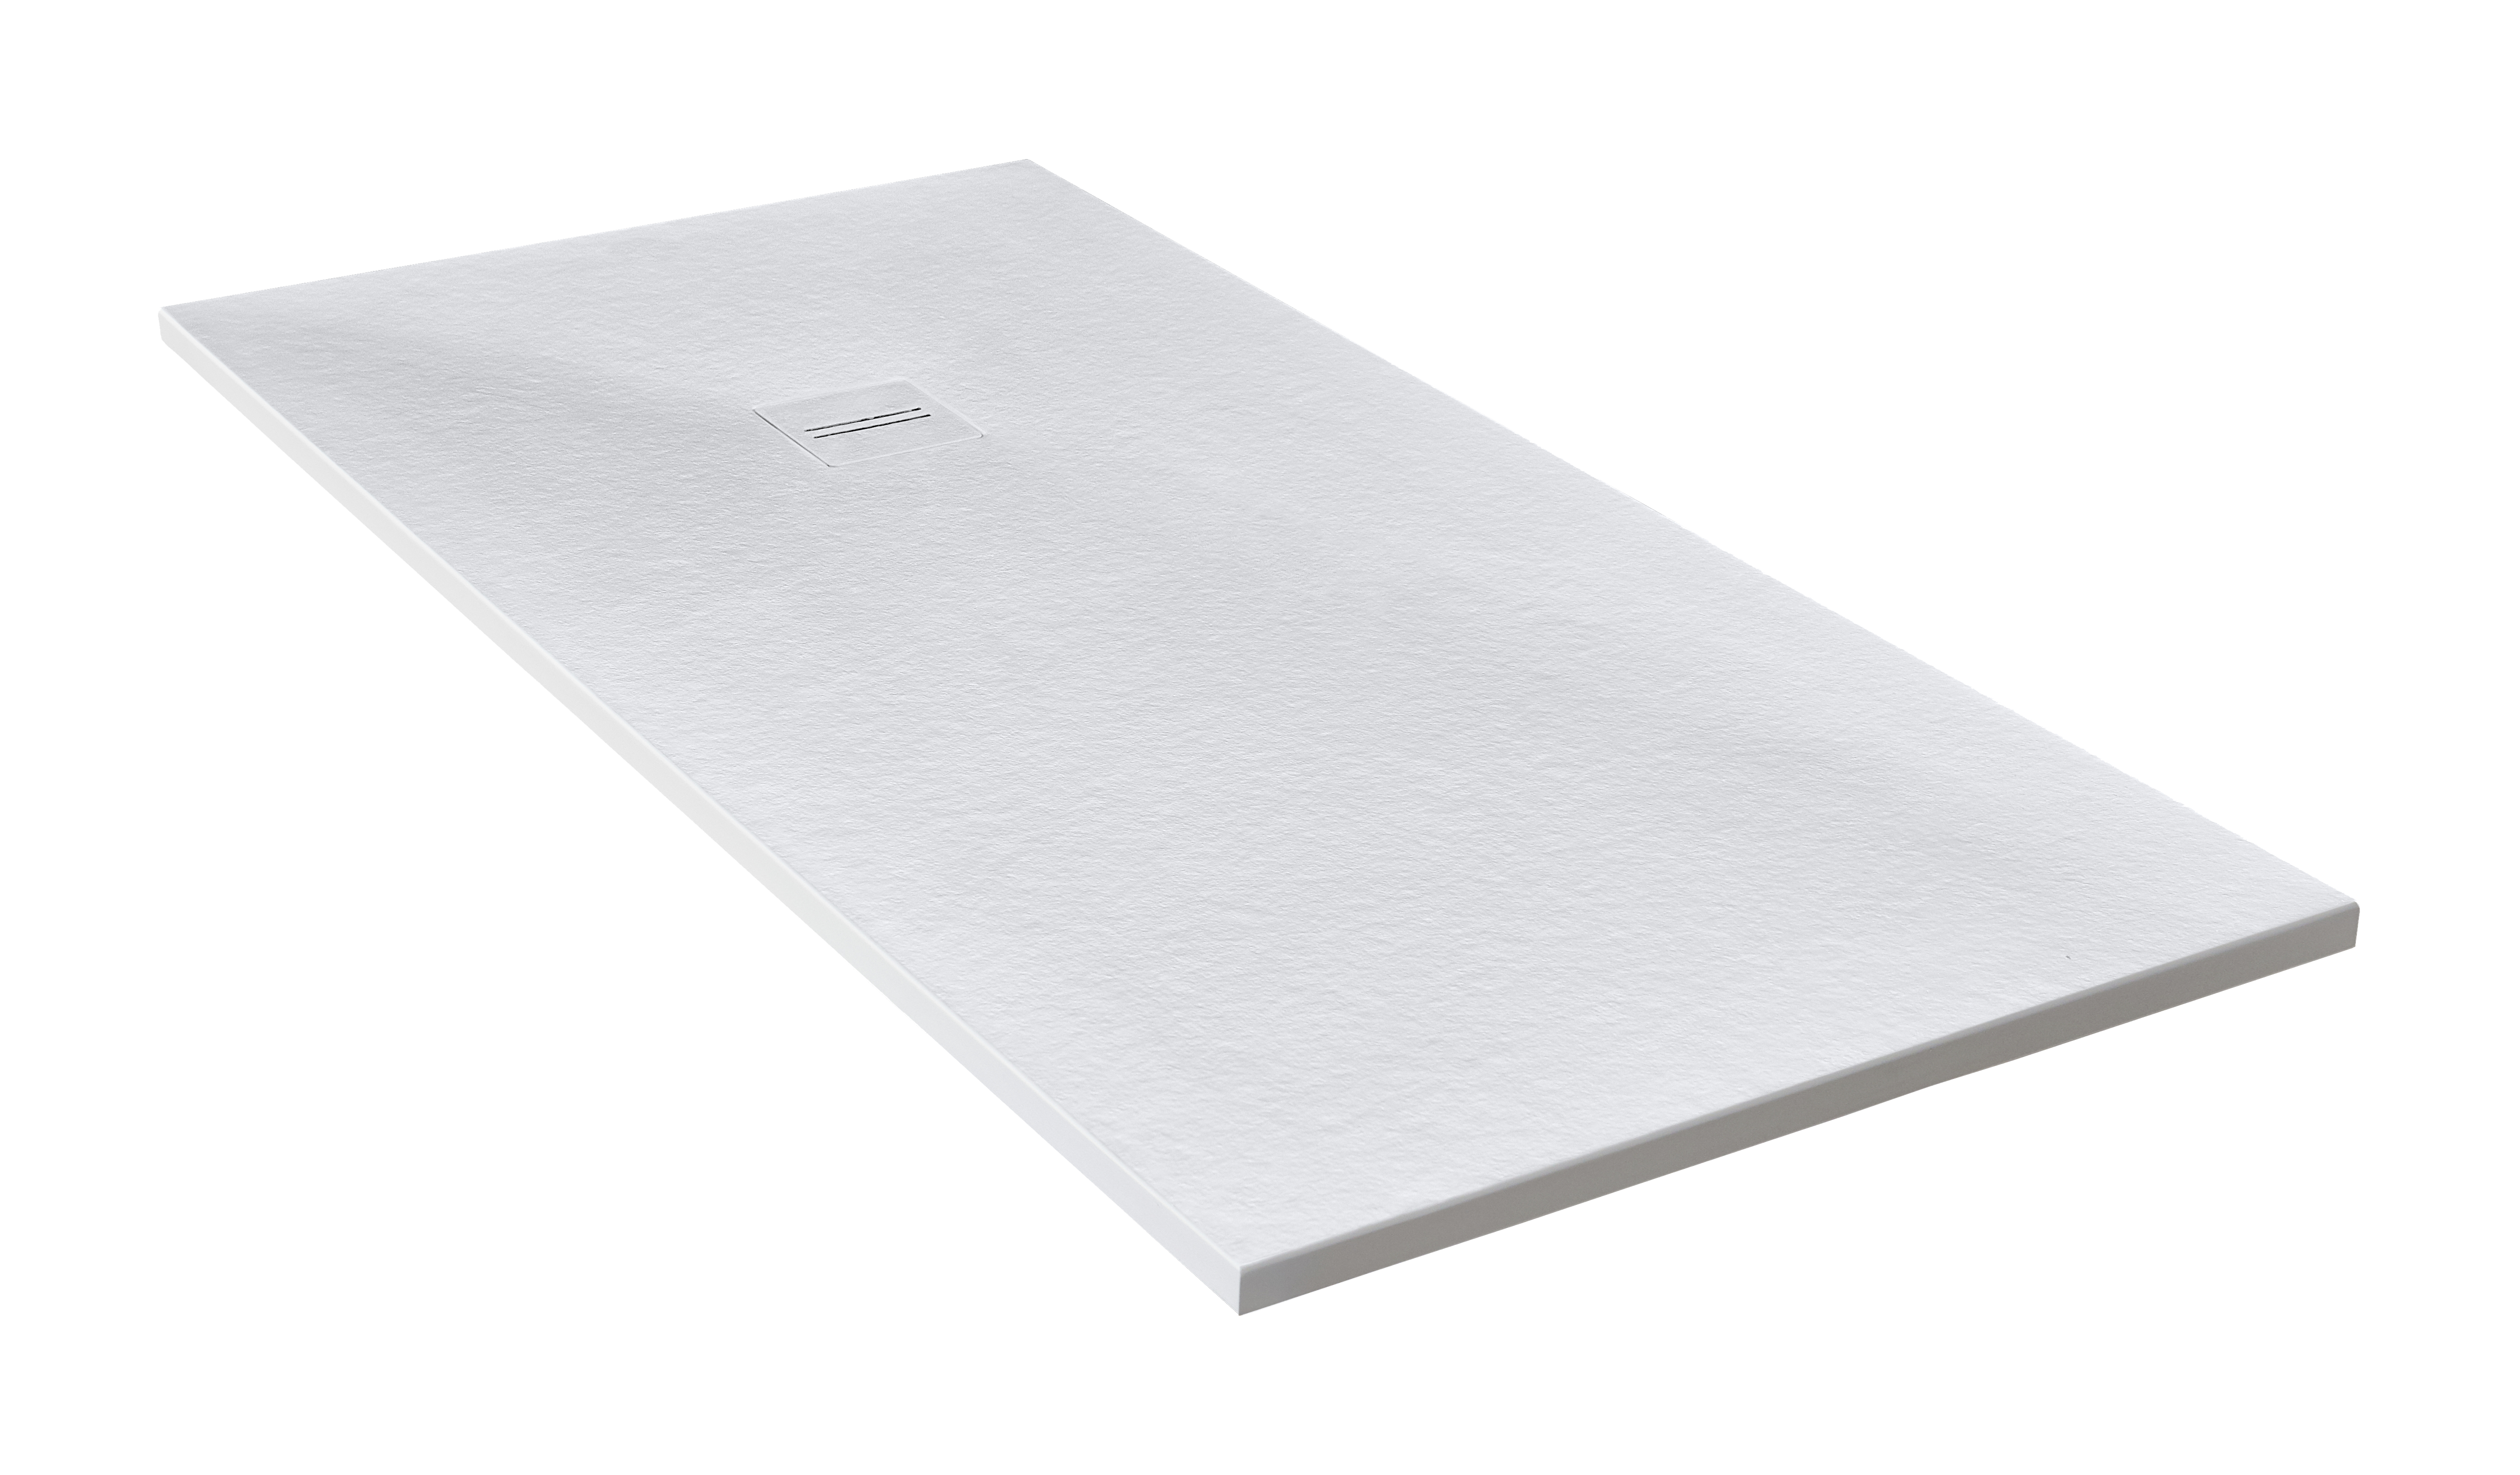 Plato de ducha cosmos 210x100 cm blanco